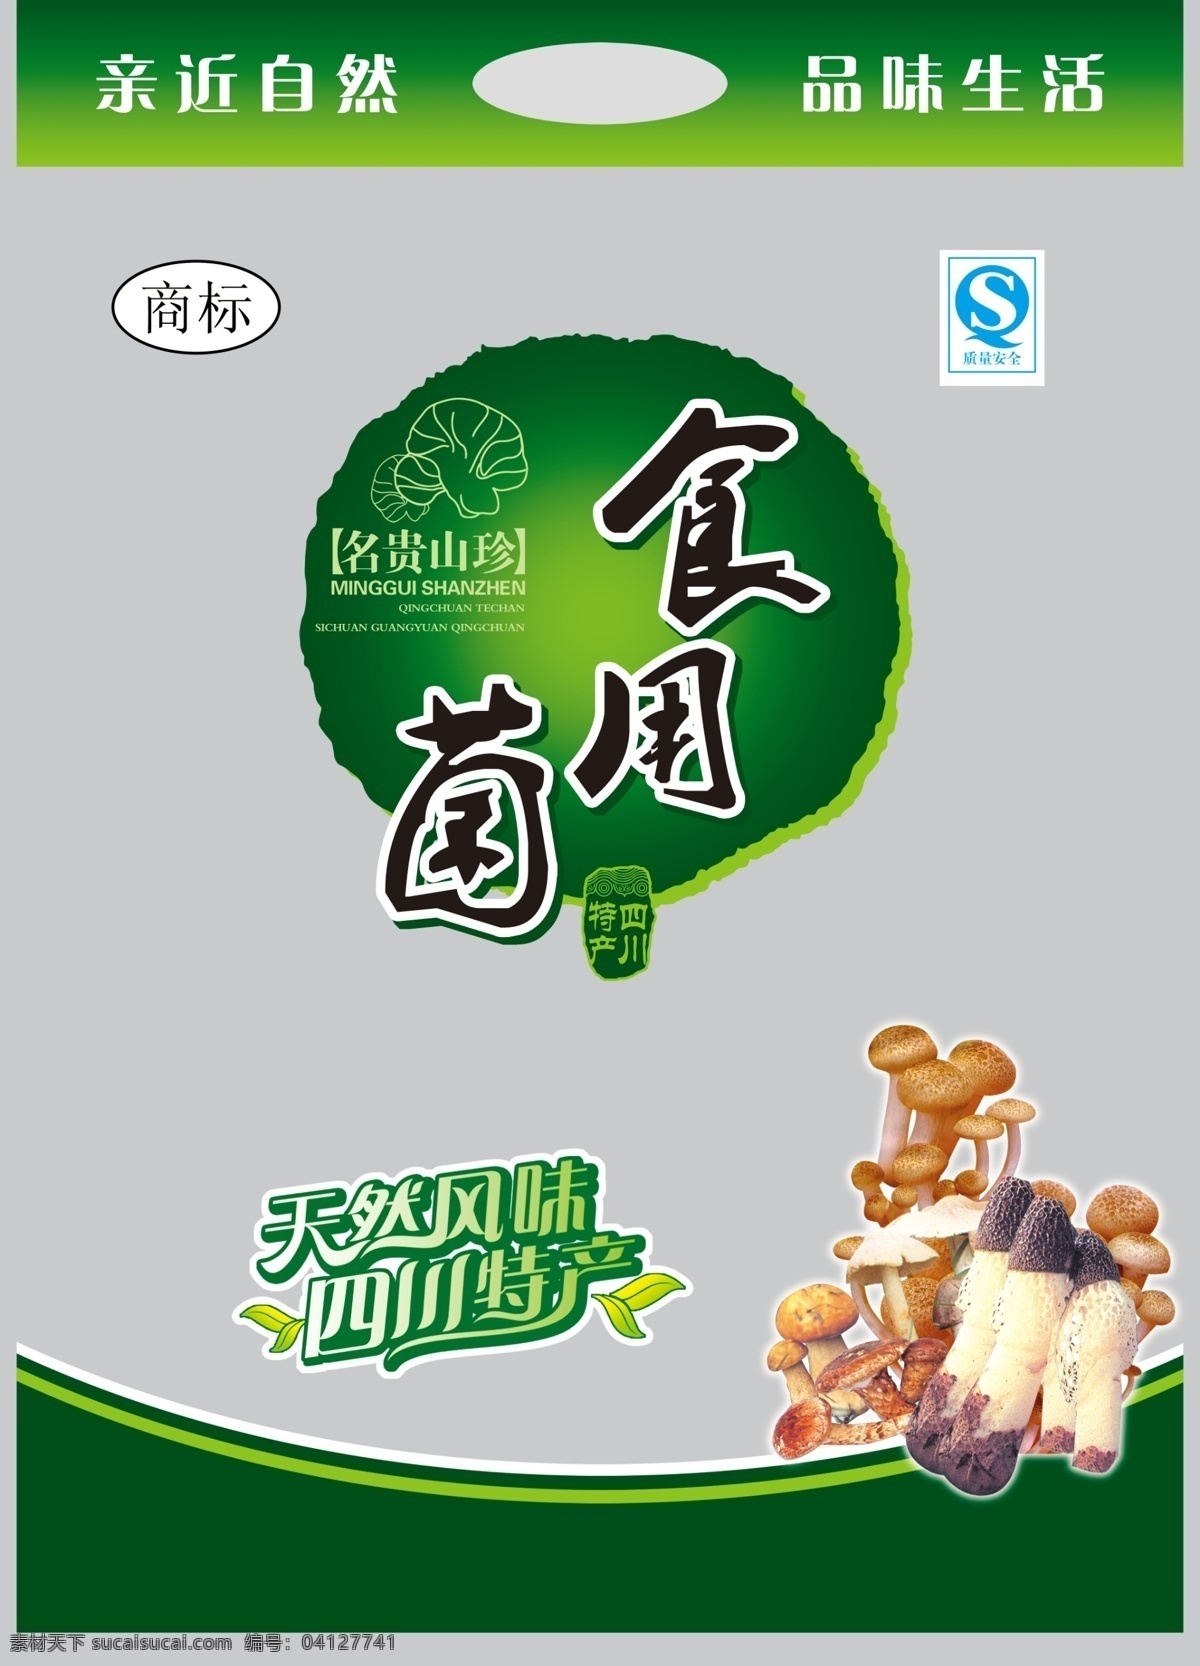 食用菌 食品包装 菌 包装设计 广告设计模板 源文件